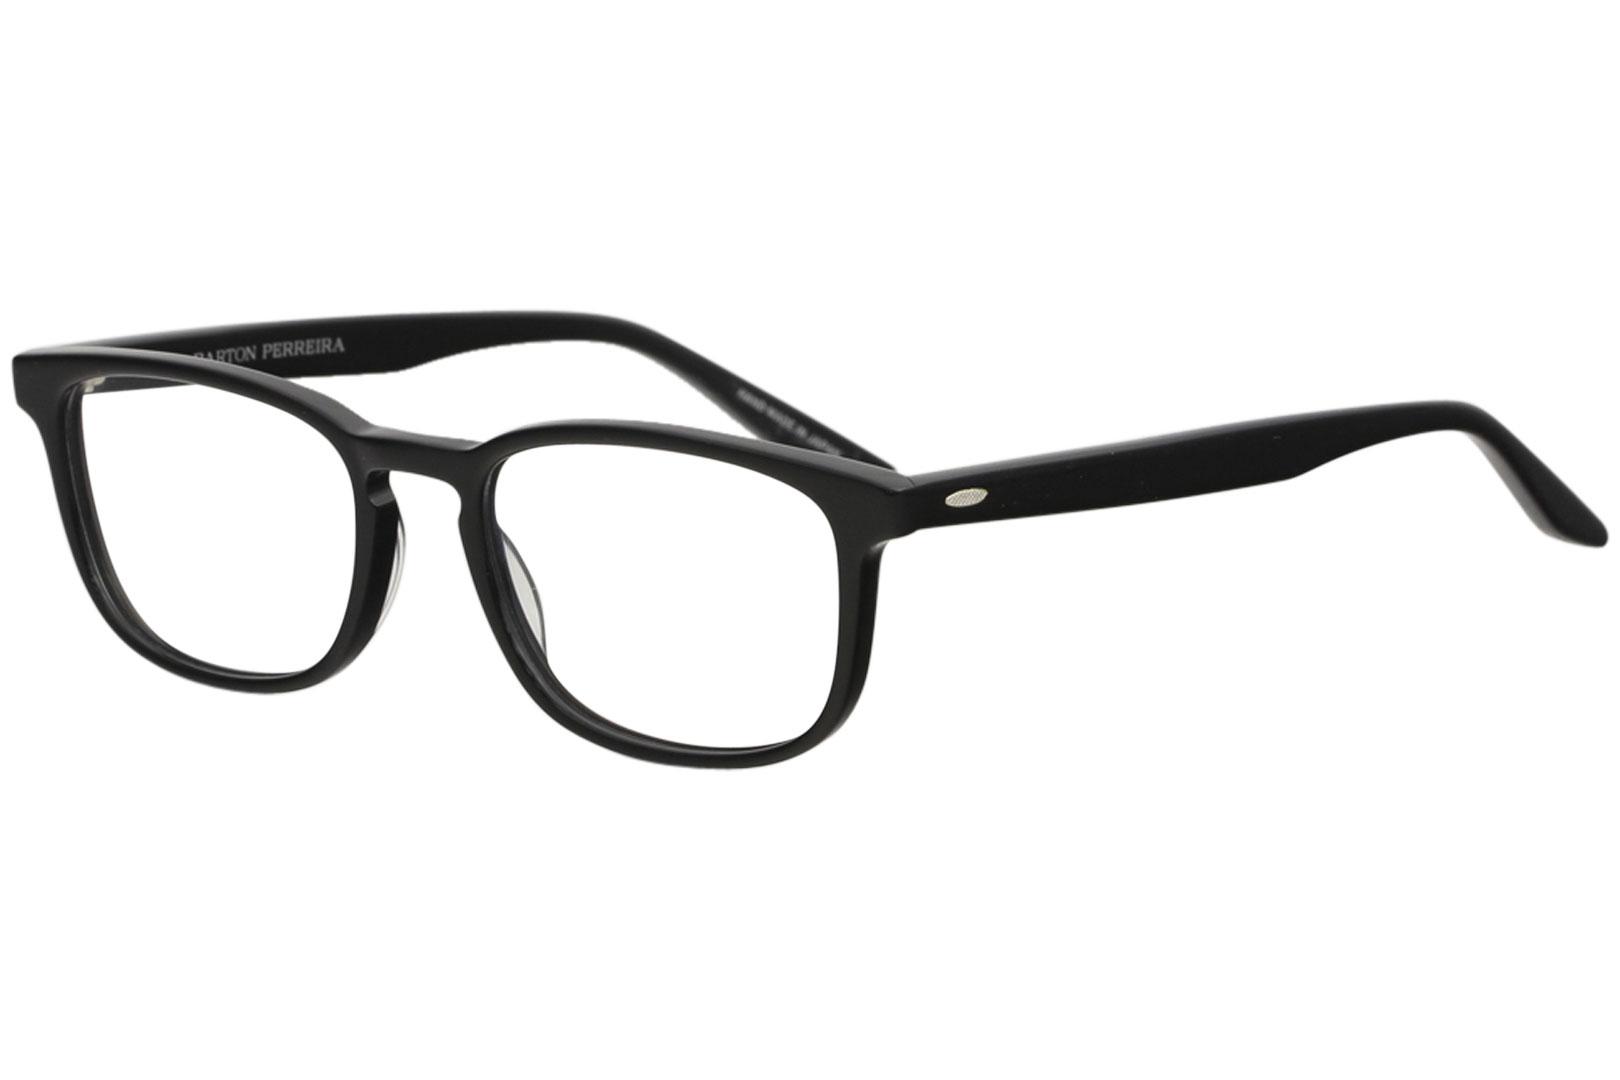 Barton Perreira Men's Eyeglasses Thompson Full Rim Optical Frame ...